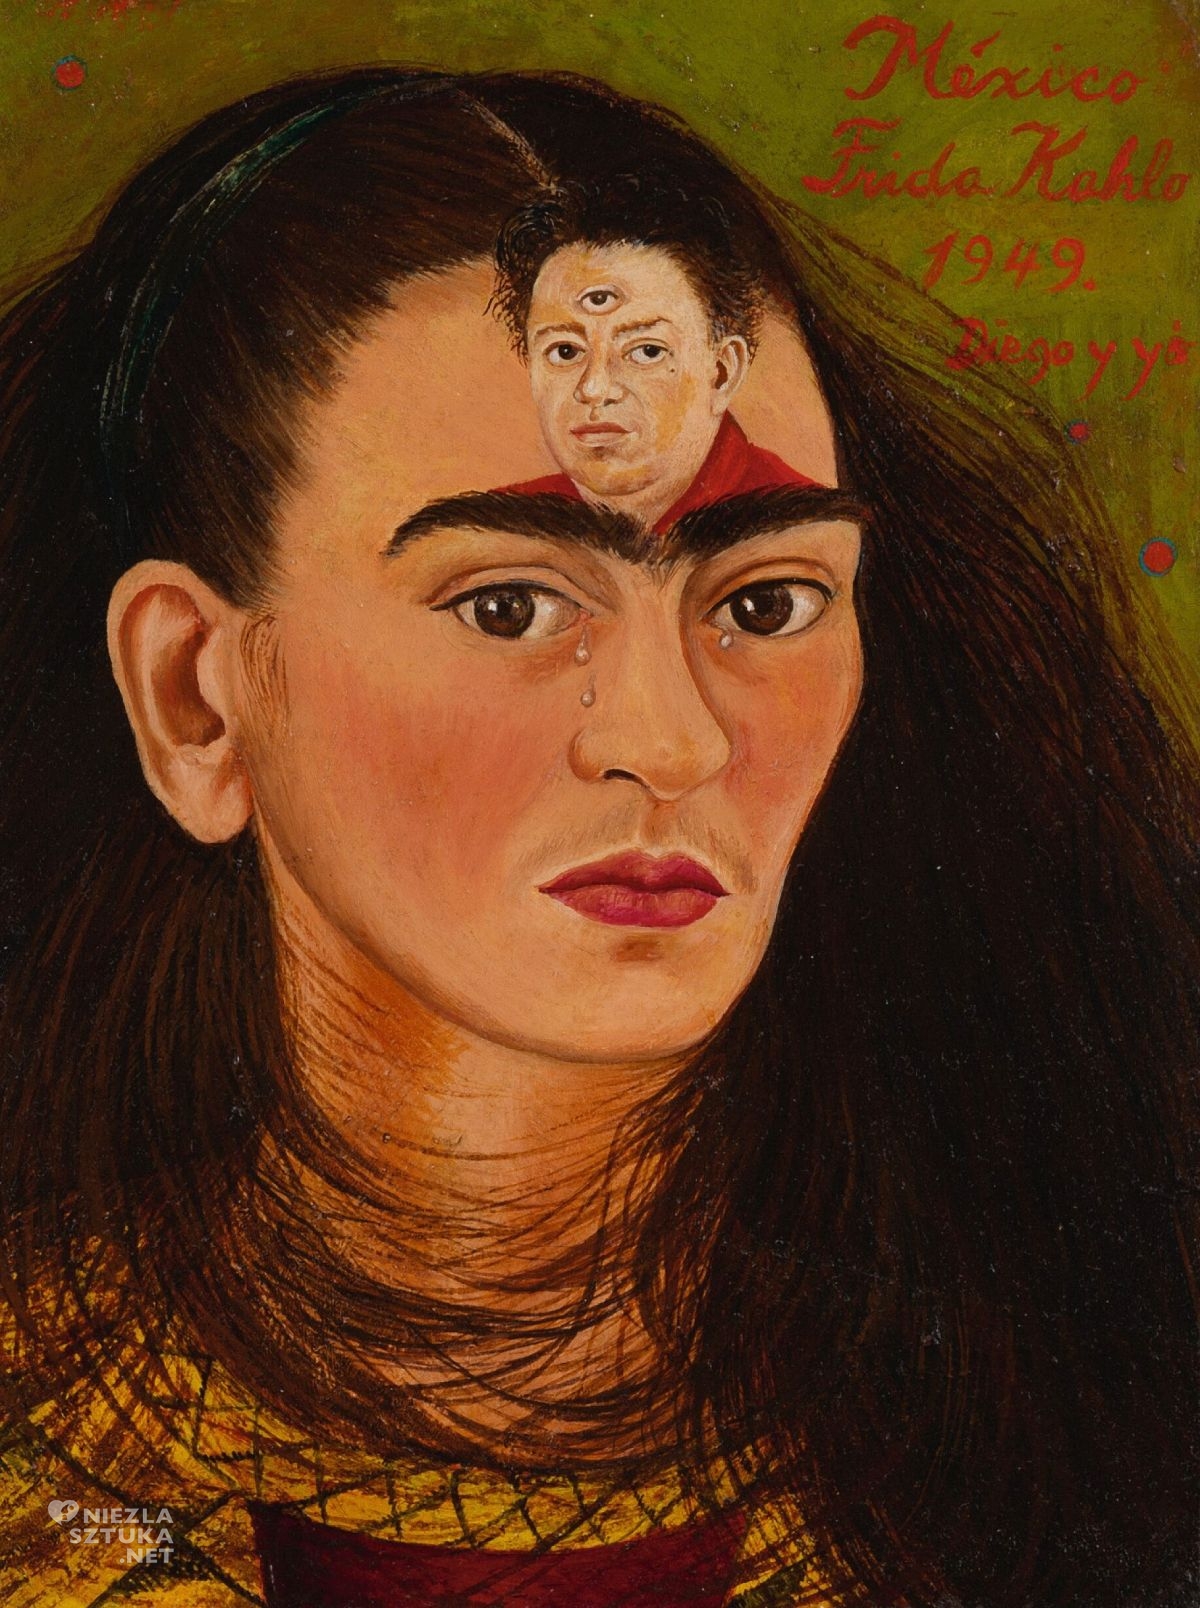 Frida Kahlo, Diego i ja, Diego y yo, Diego Rivera, autoportret, kobiety w sztuce, sztuka meksykańska, Meksyk, niezła sztuka